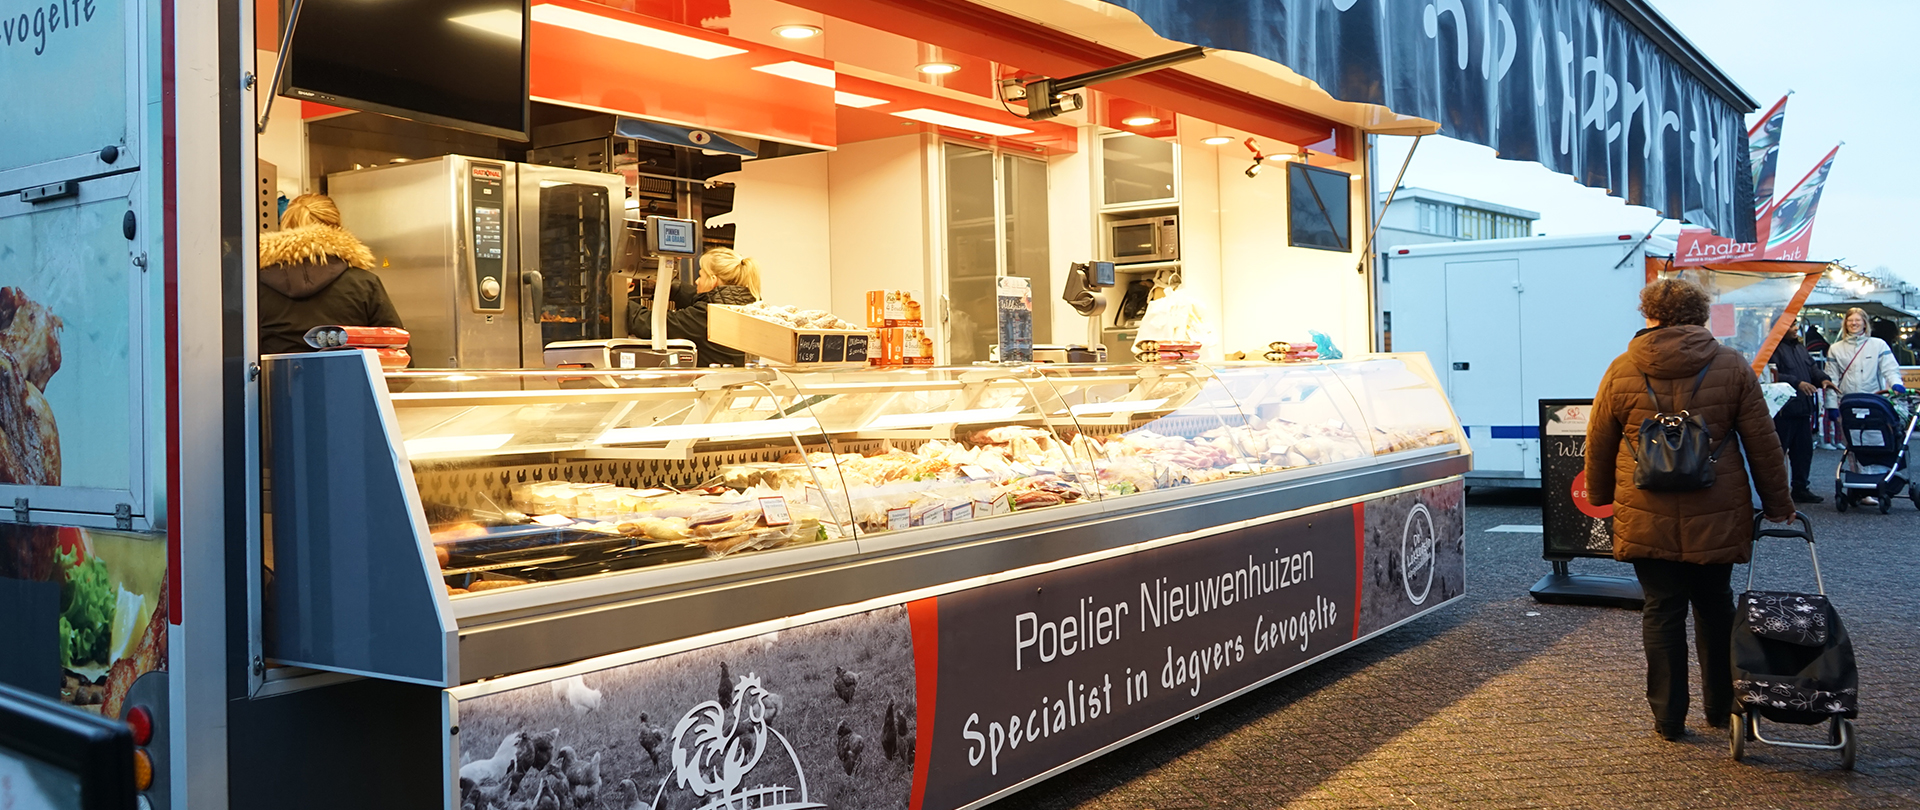 Poelier Nieuwenhuizen – Kip op de markt